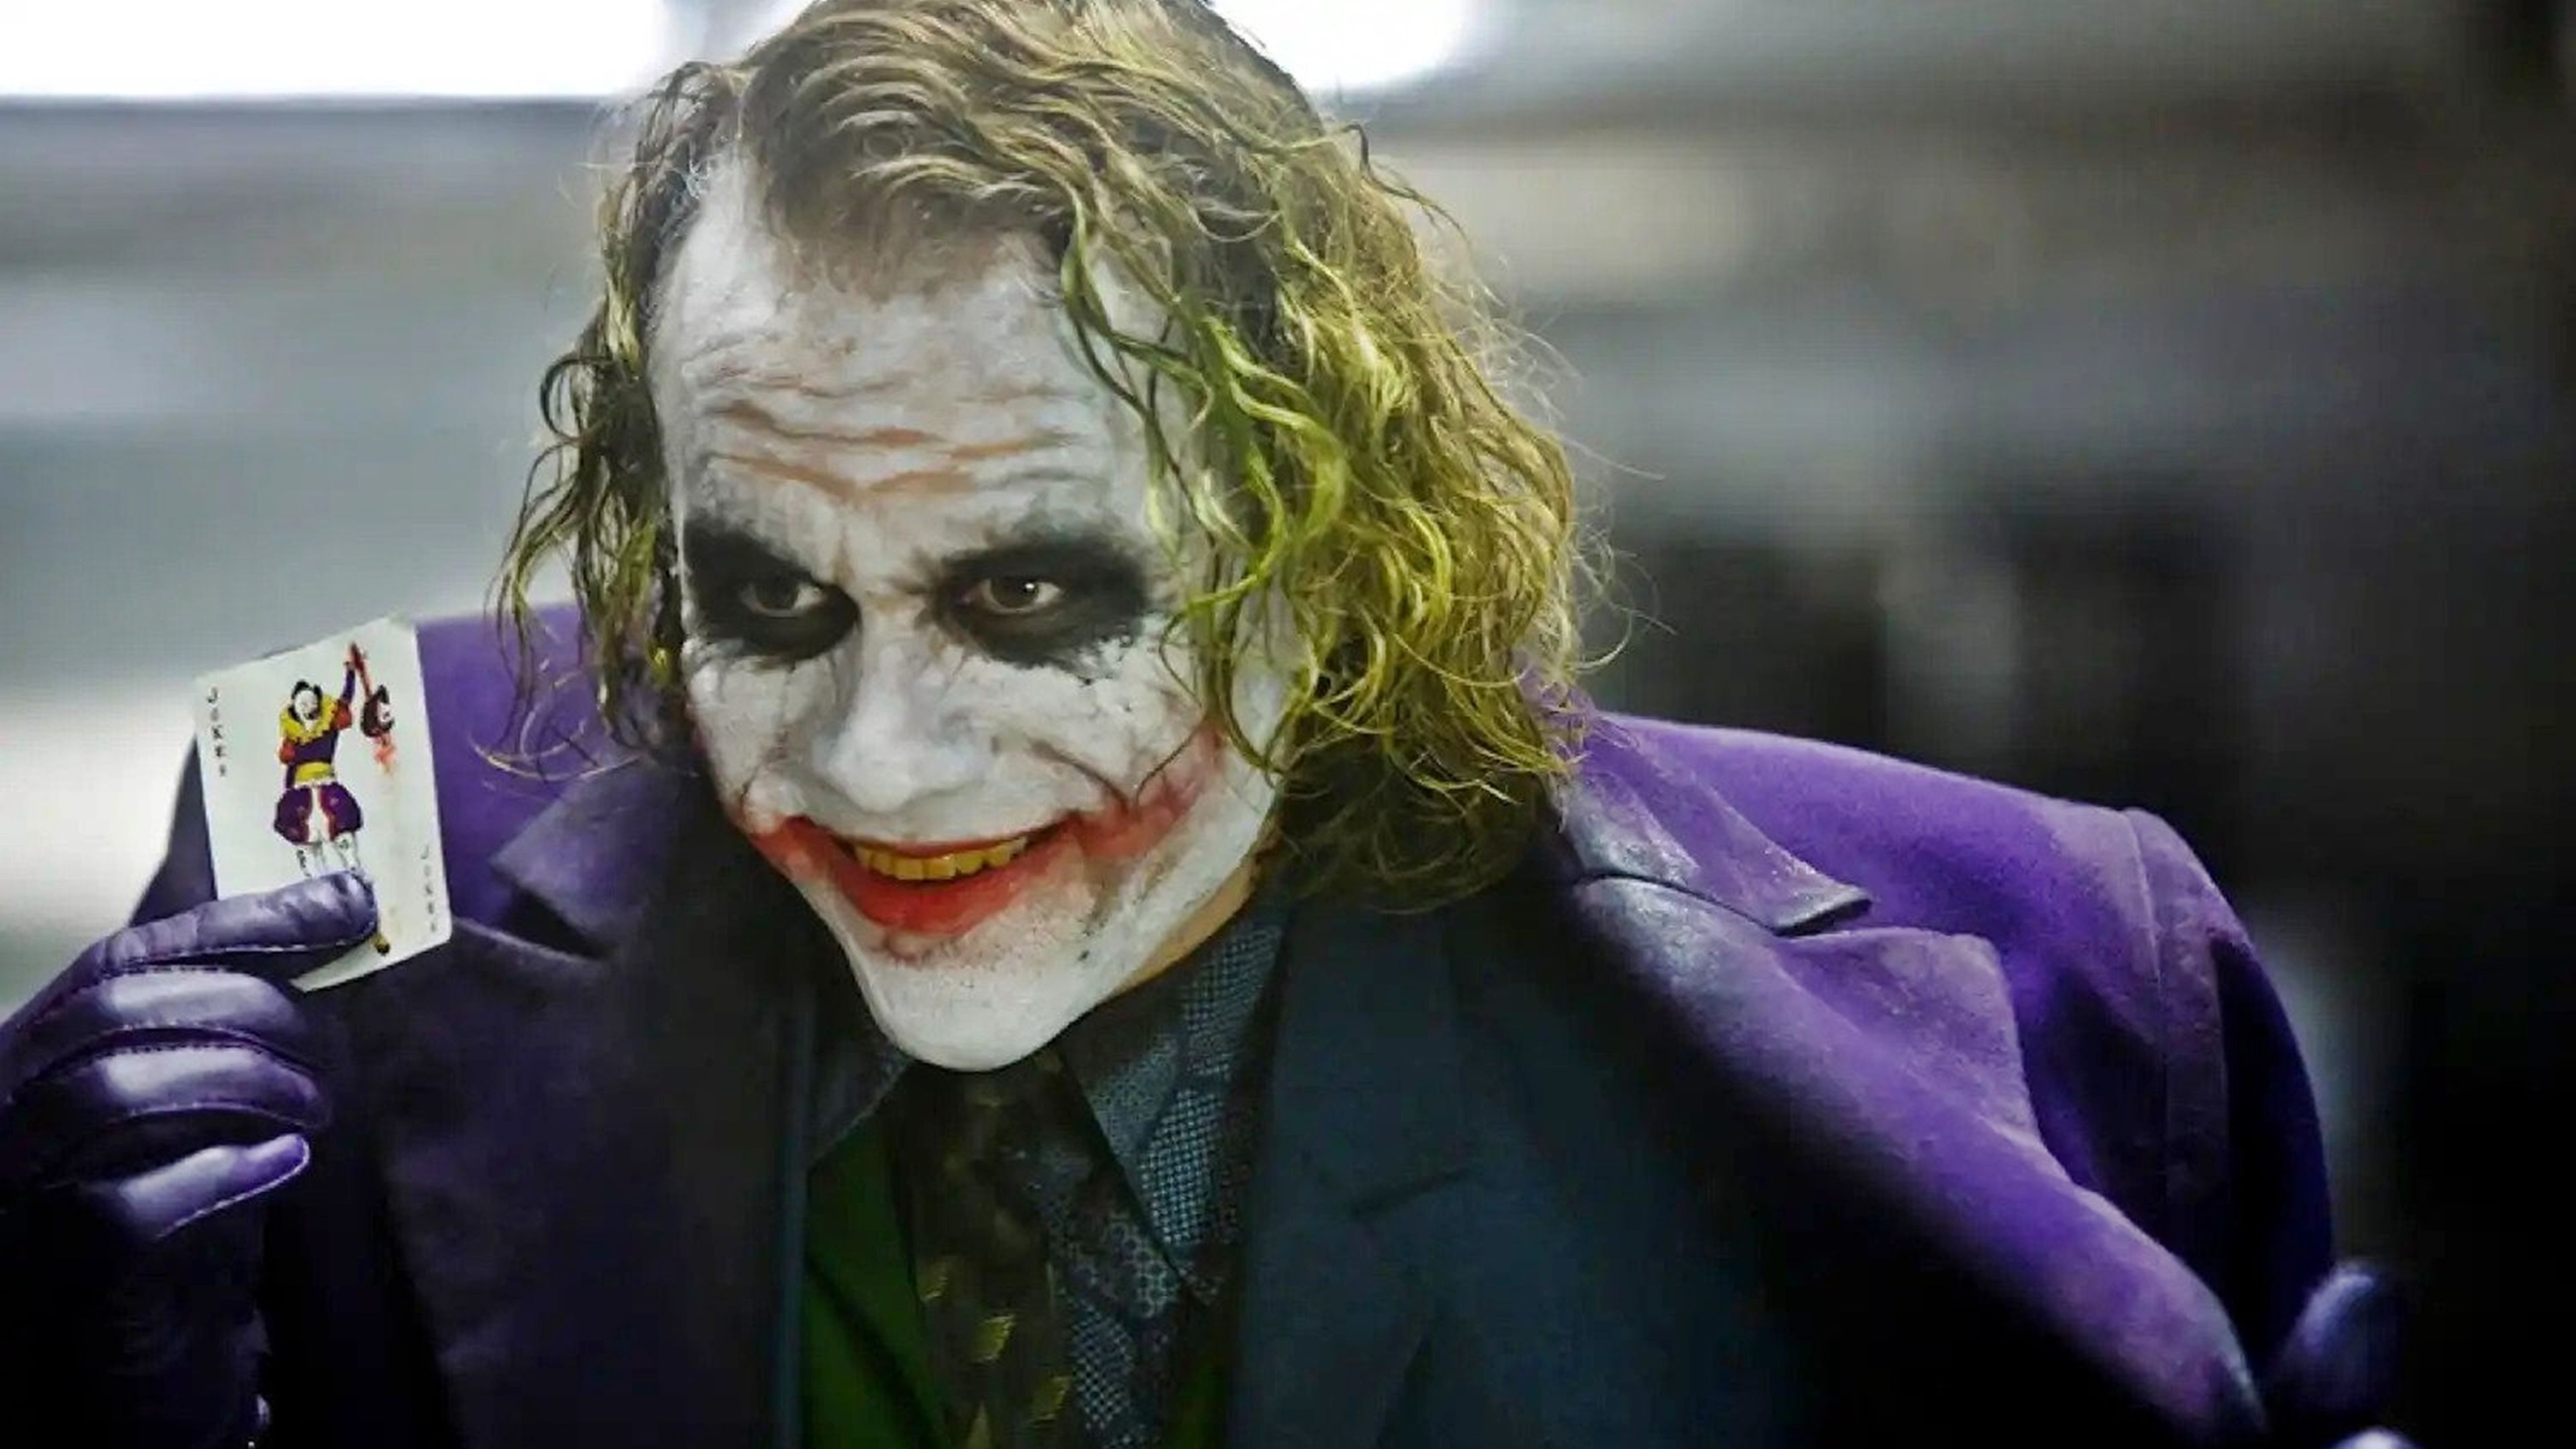 El Caballero Oscuro - El Joker